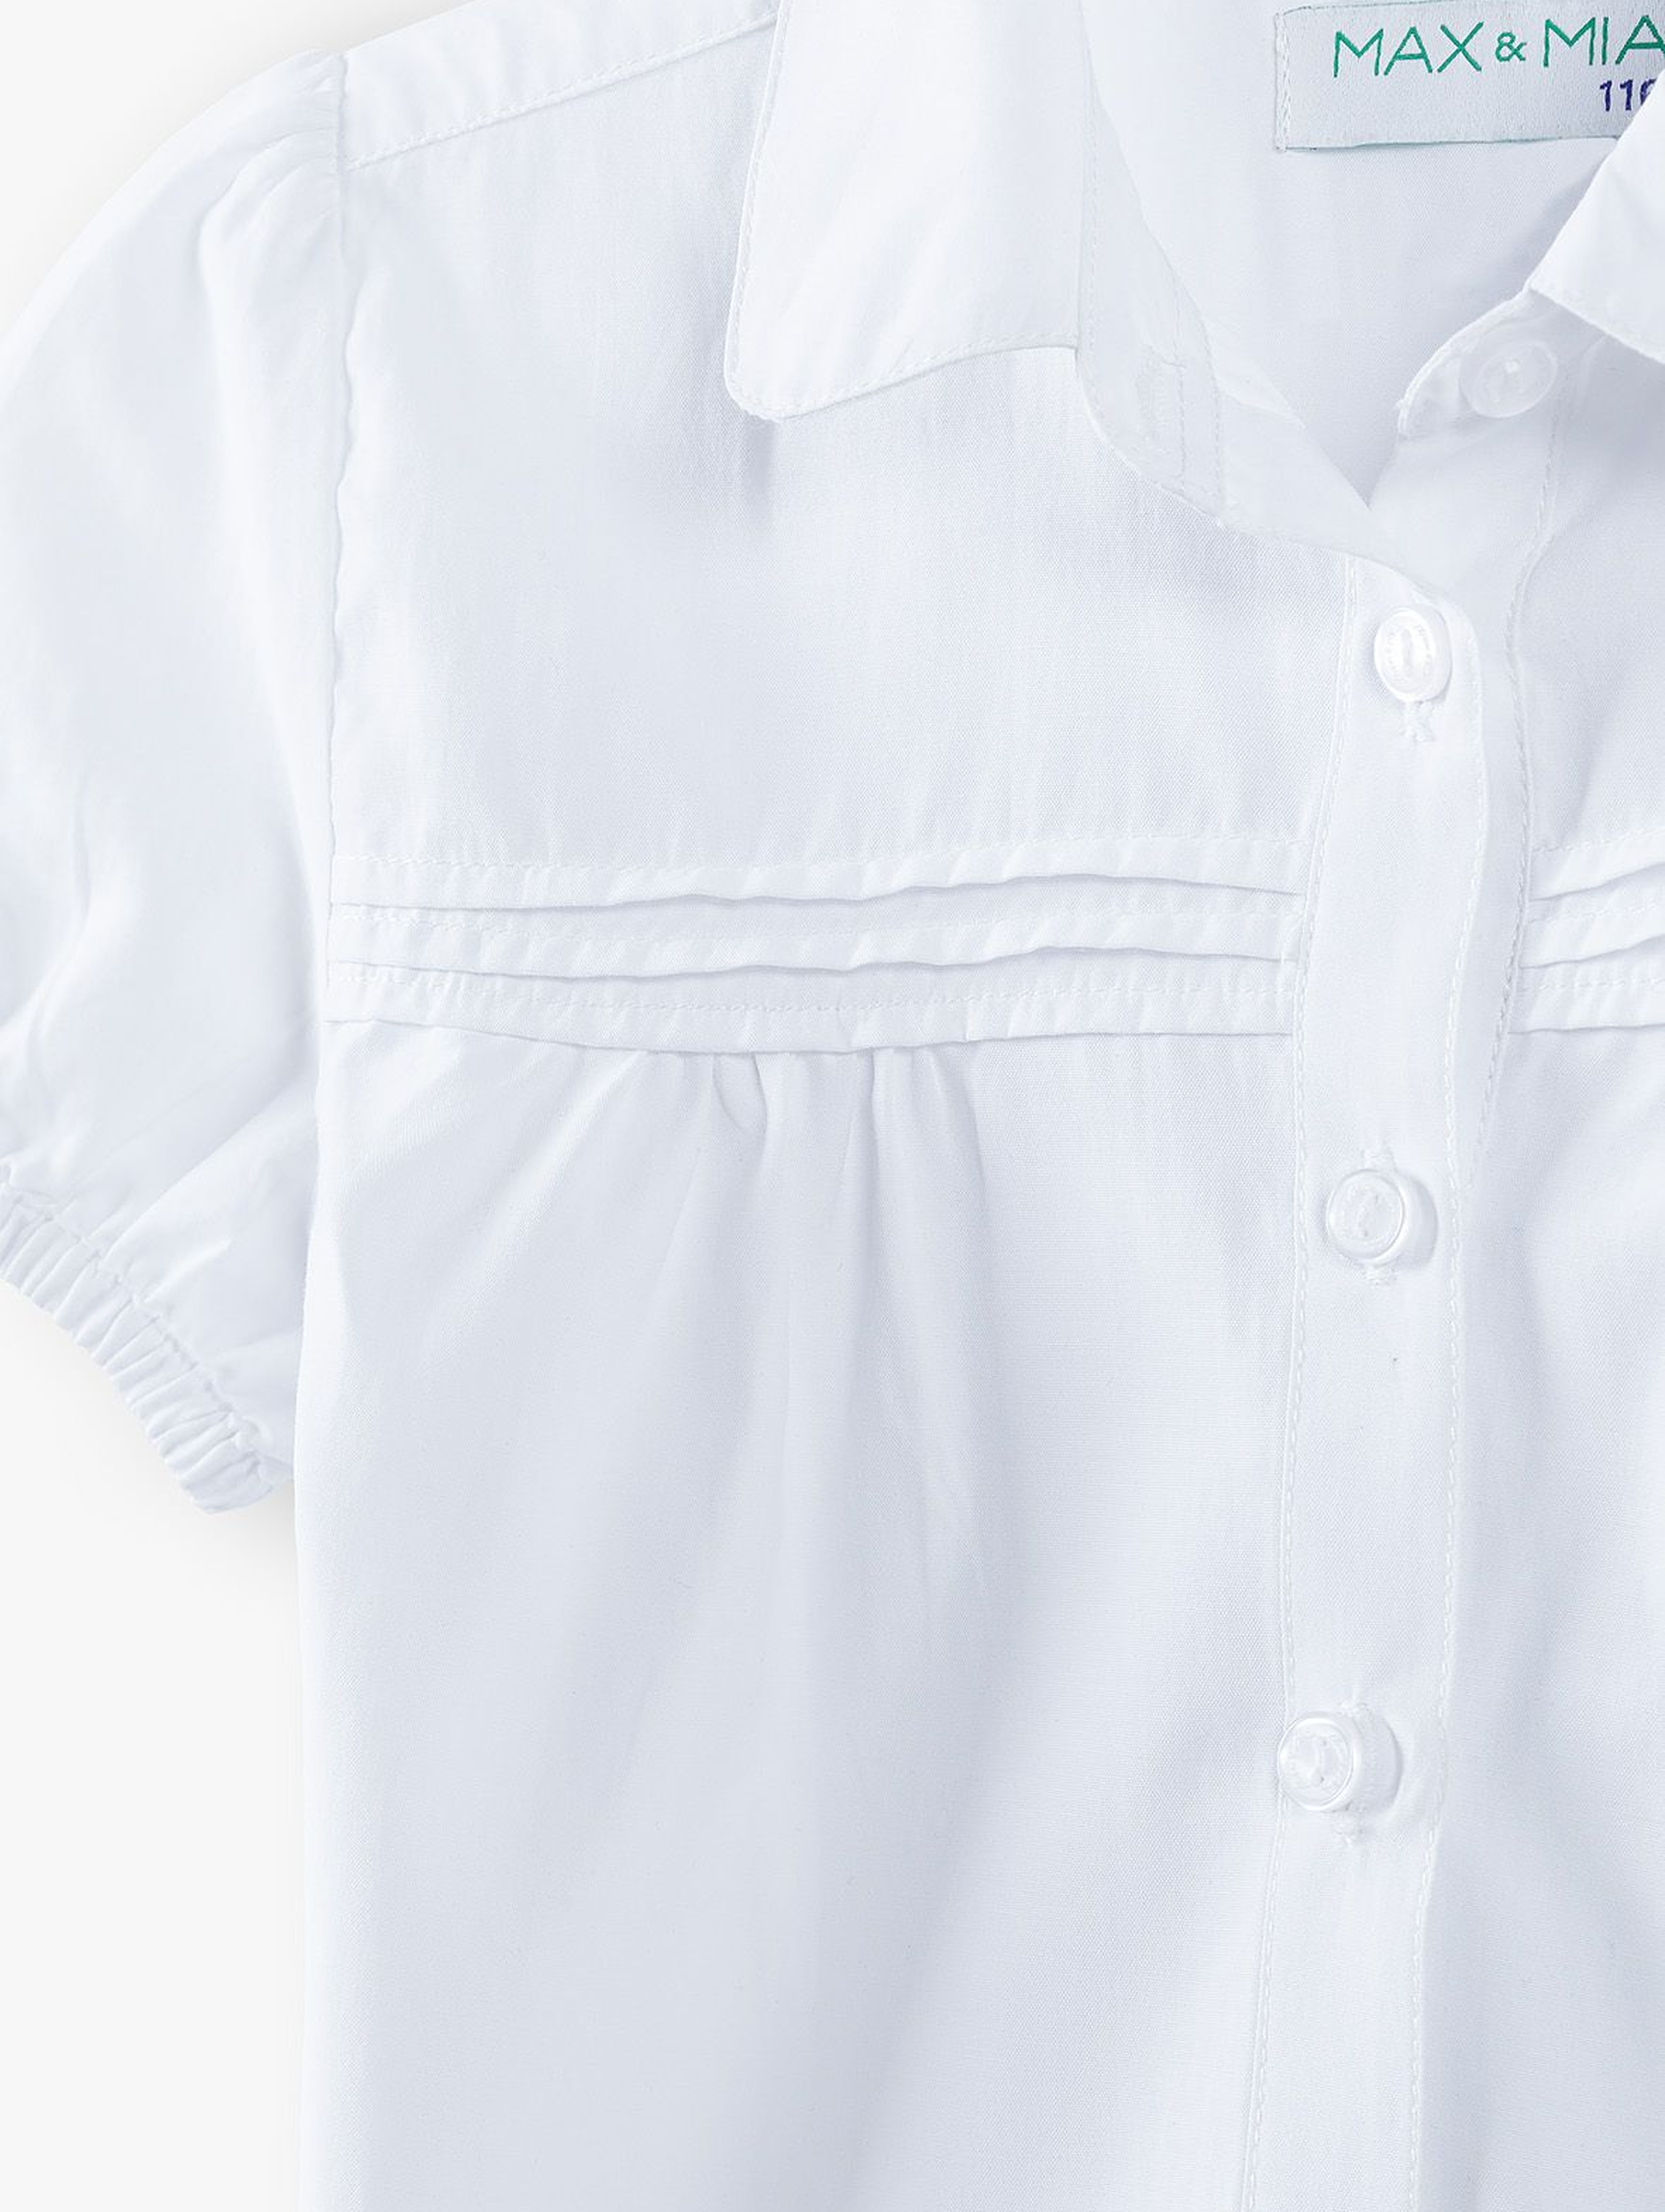 Biała elegancka koszula dziewczęca zapinana na guziki - krótki rękaw